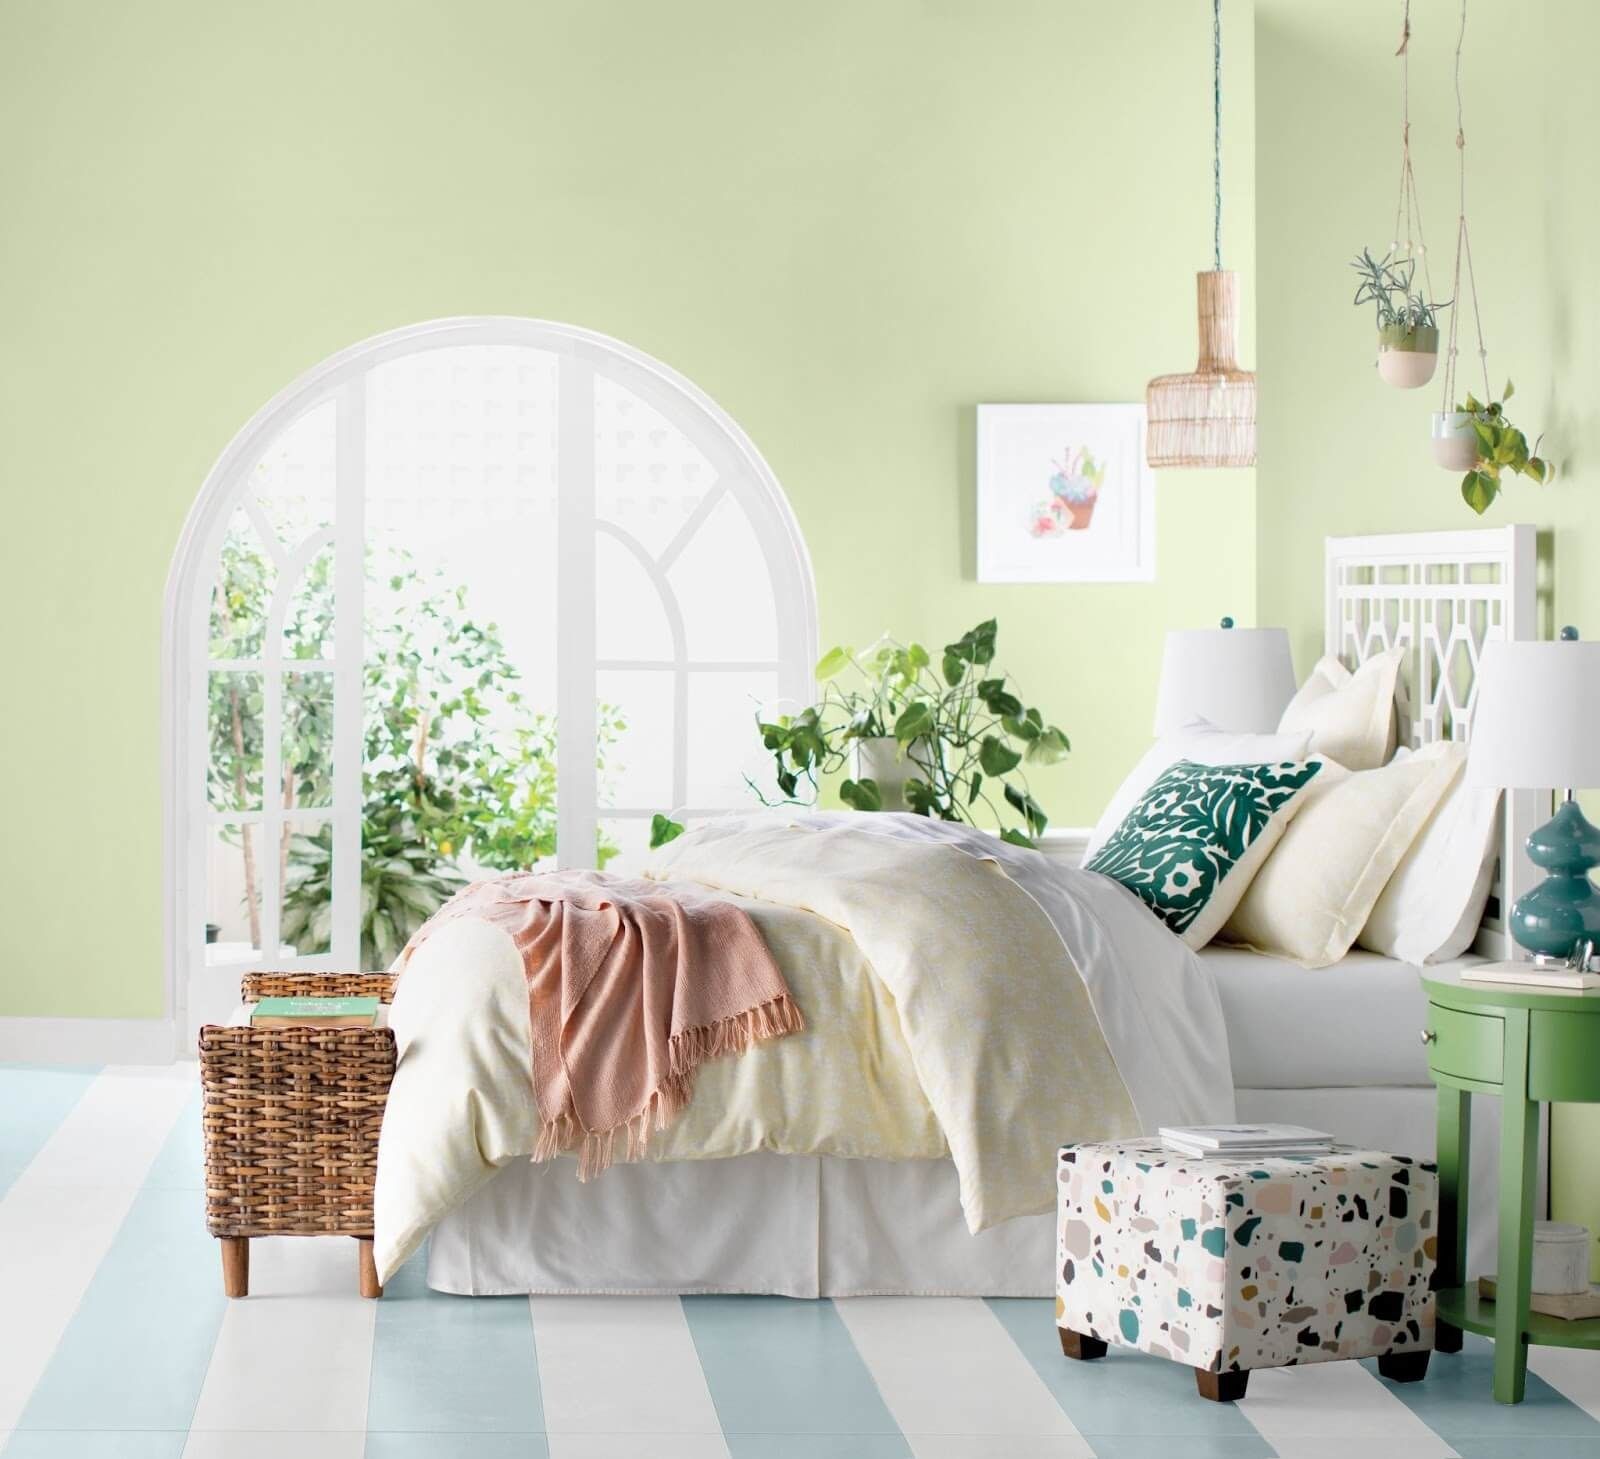 Màu xanh lá cây pastel giúp căn phòng trở nên sáng và mát mẻ hơn